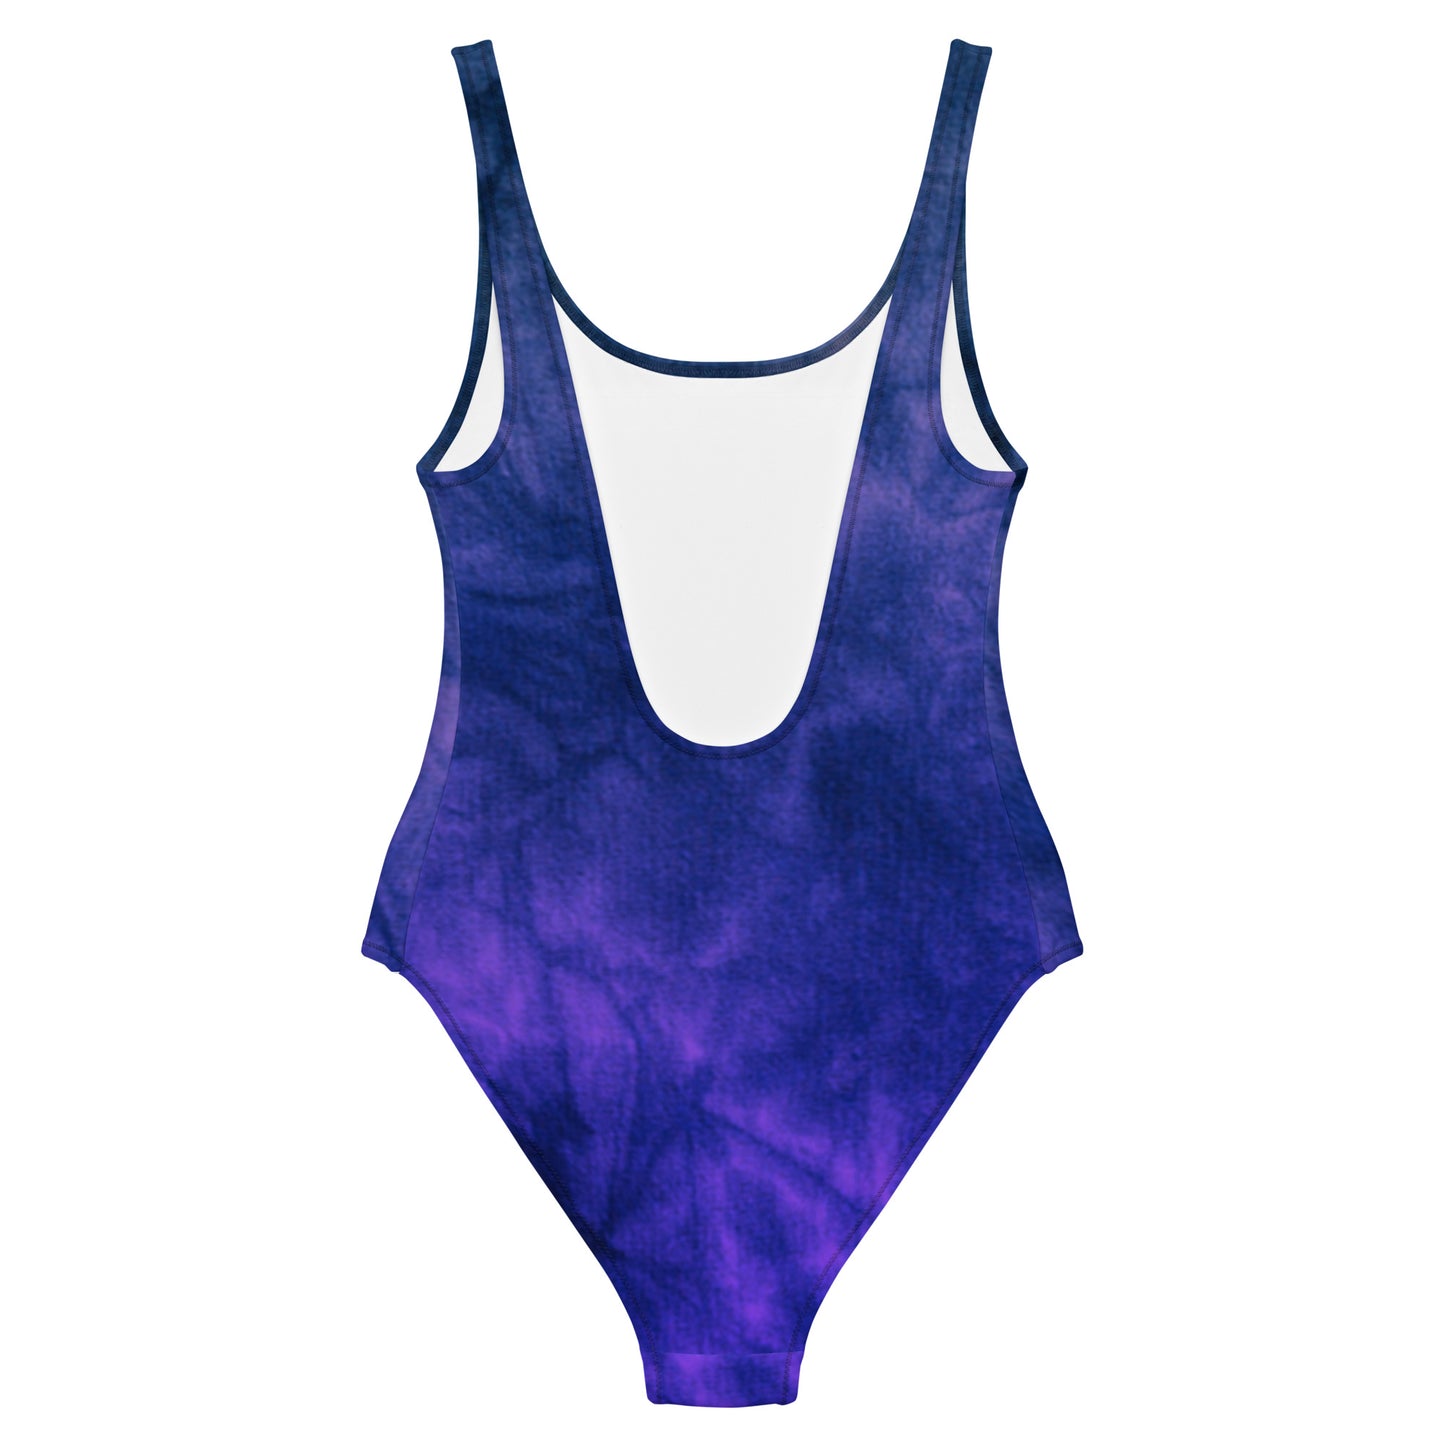 Blue & Purple Tie Dye One-Piece Swimsuit